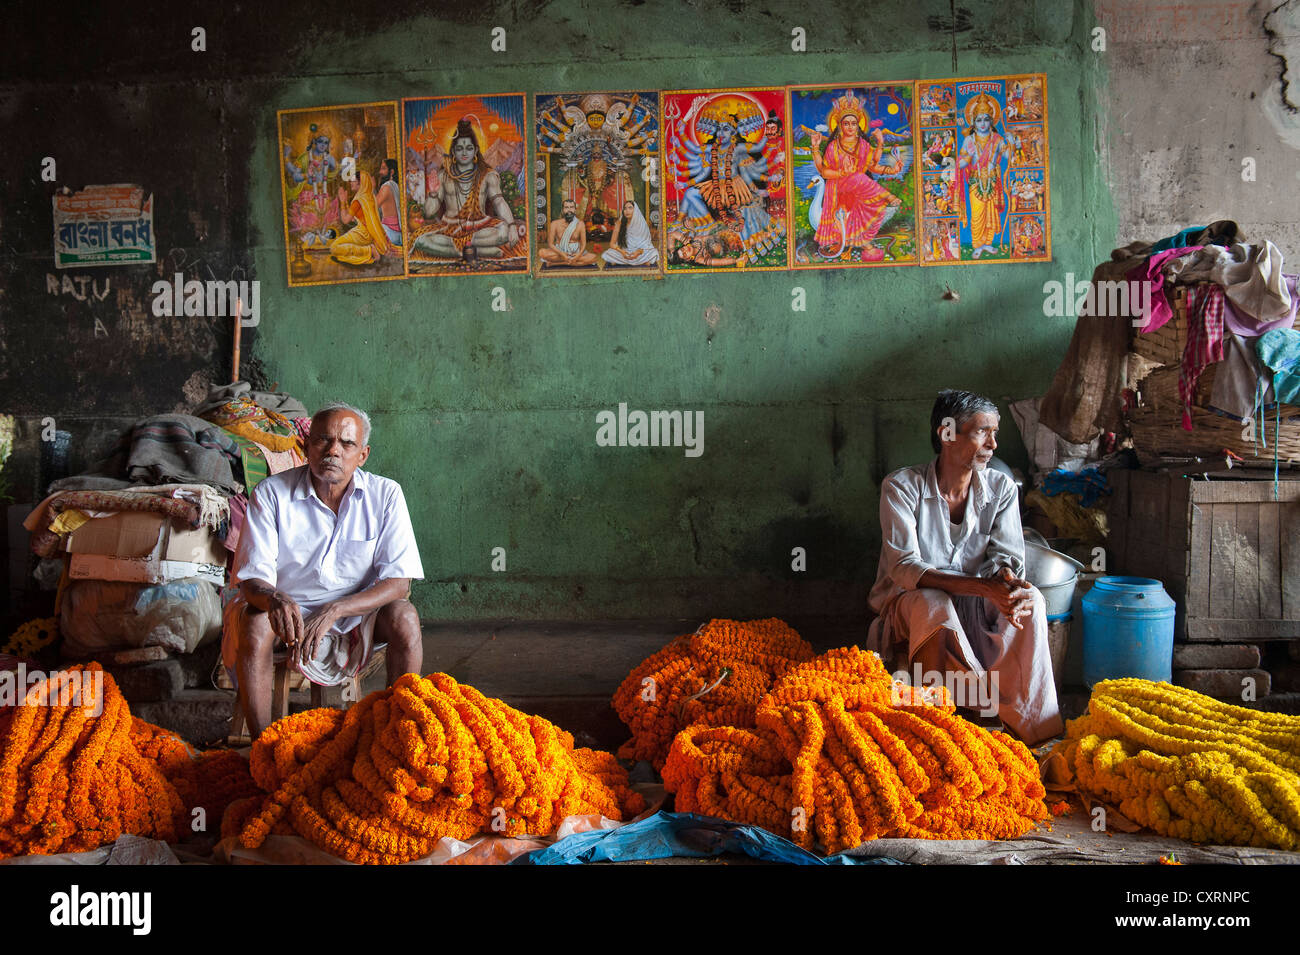 Bilder von Hindu-Götter auf einer grünen Wand, Blumenmarkt, Braut Howrah, Kalkutta, Calcutta, West-Bengalen, Ostindien, Indien, Asien Stockfoto